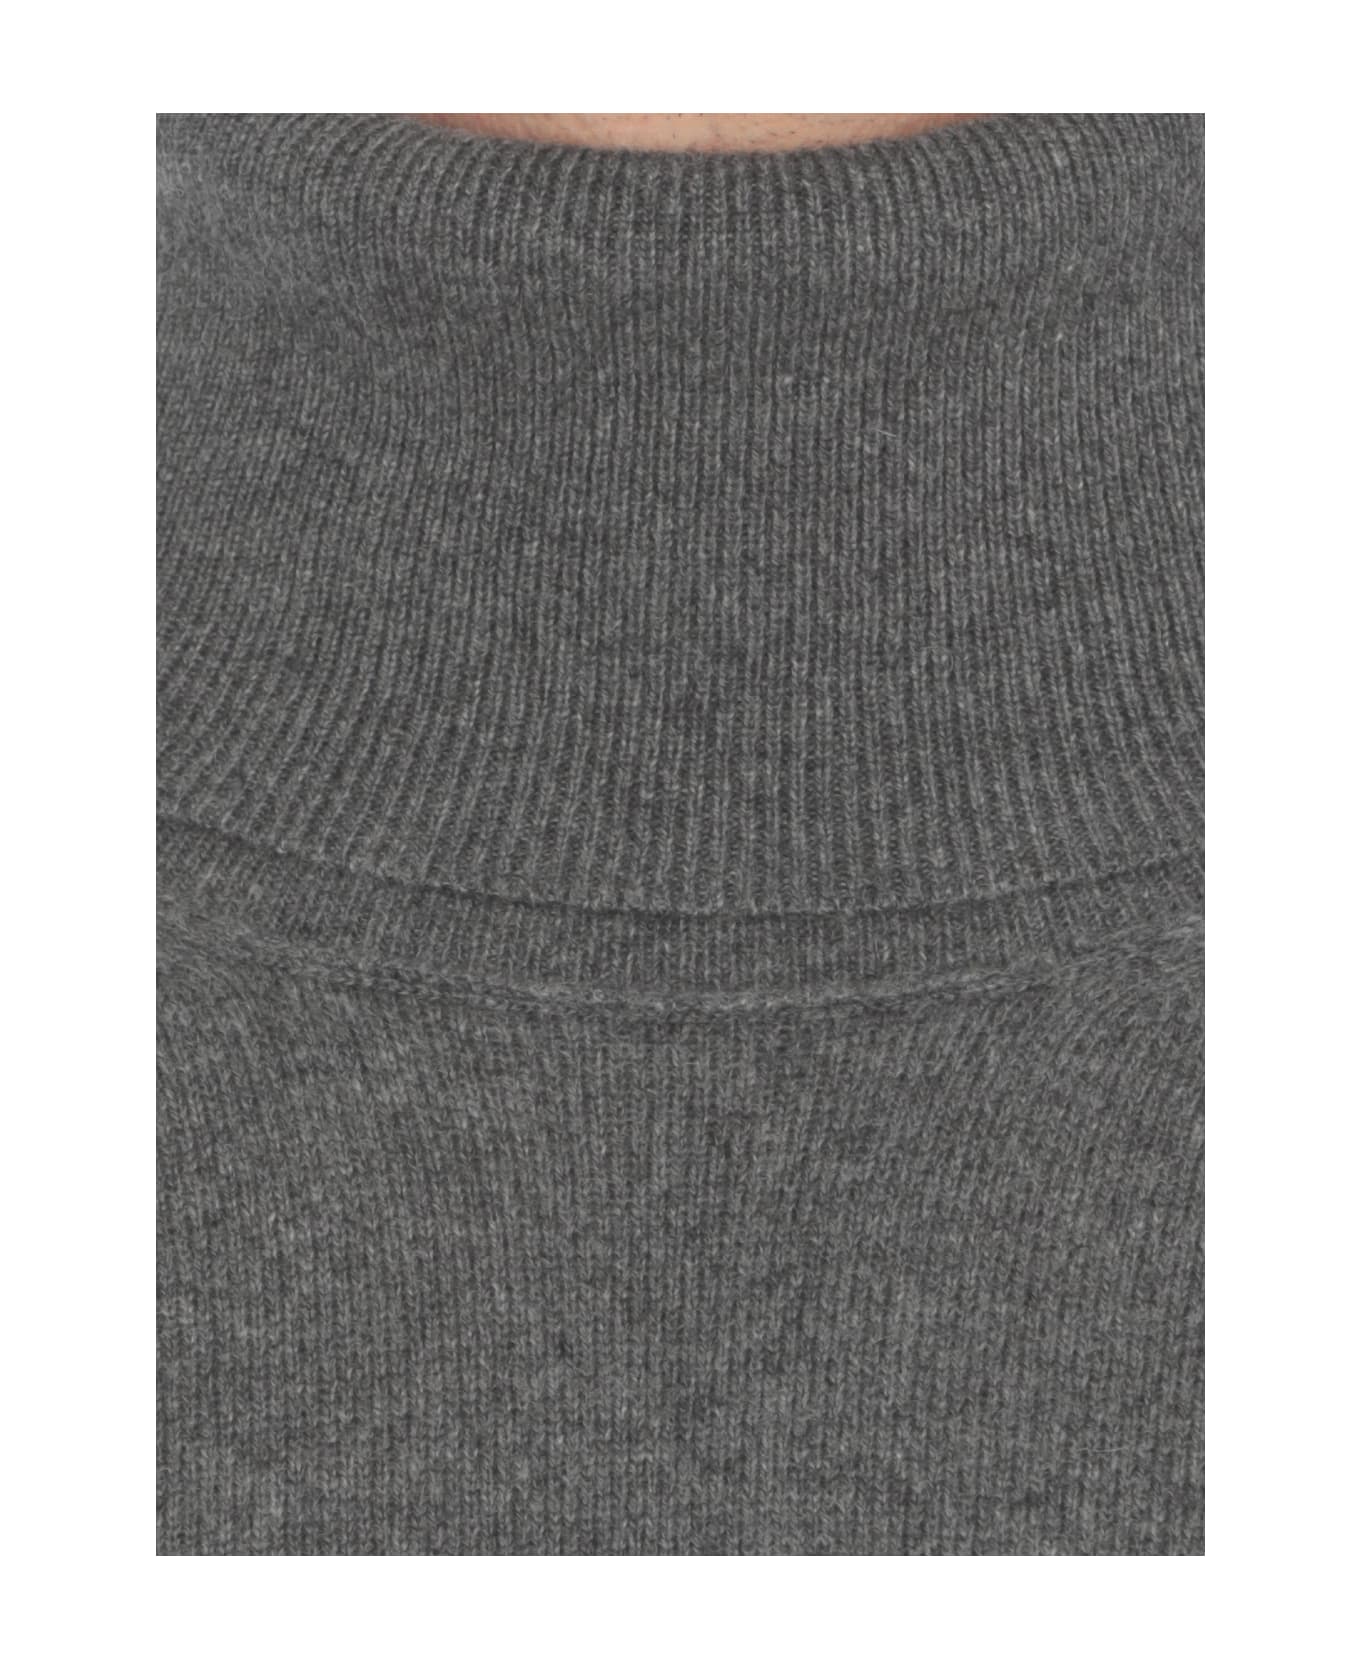 Maison Margiela Sweater - Grey ニットウェア